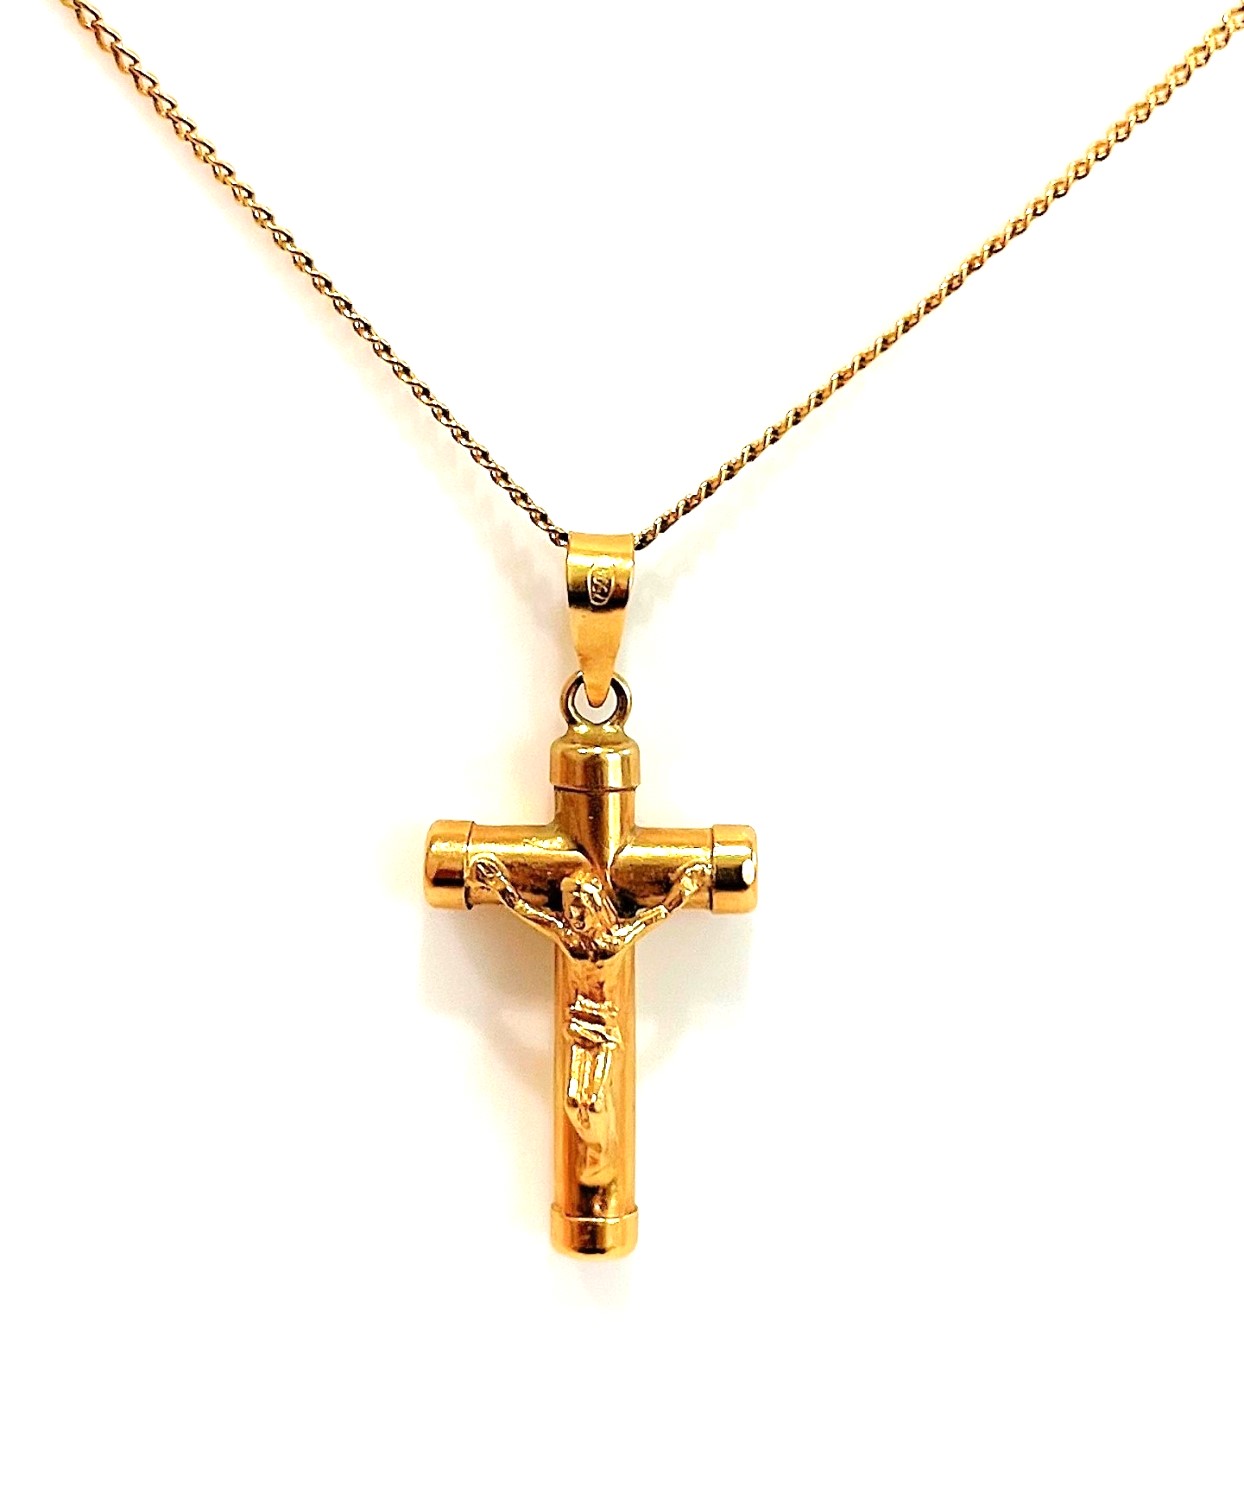 Zlatý přívěšek křížek komplet s řetízkem, vše 18 karátů